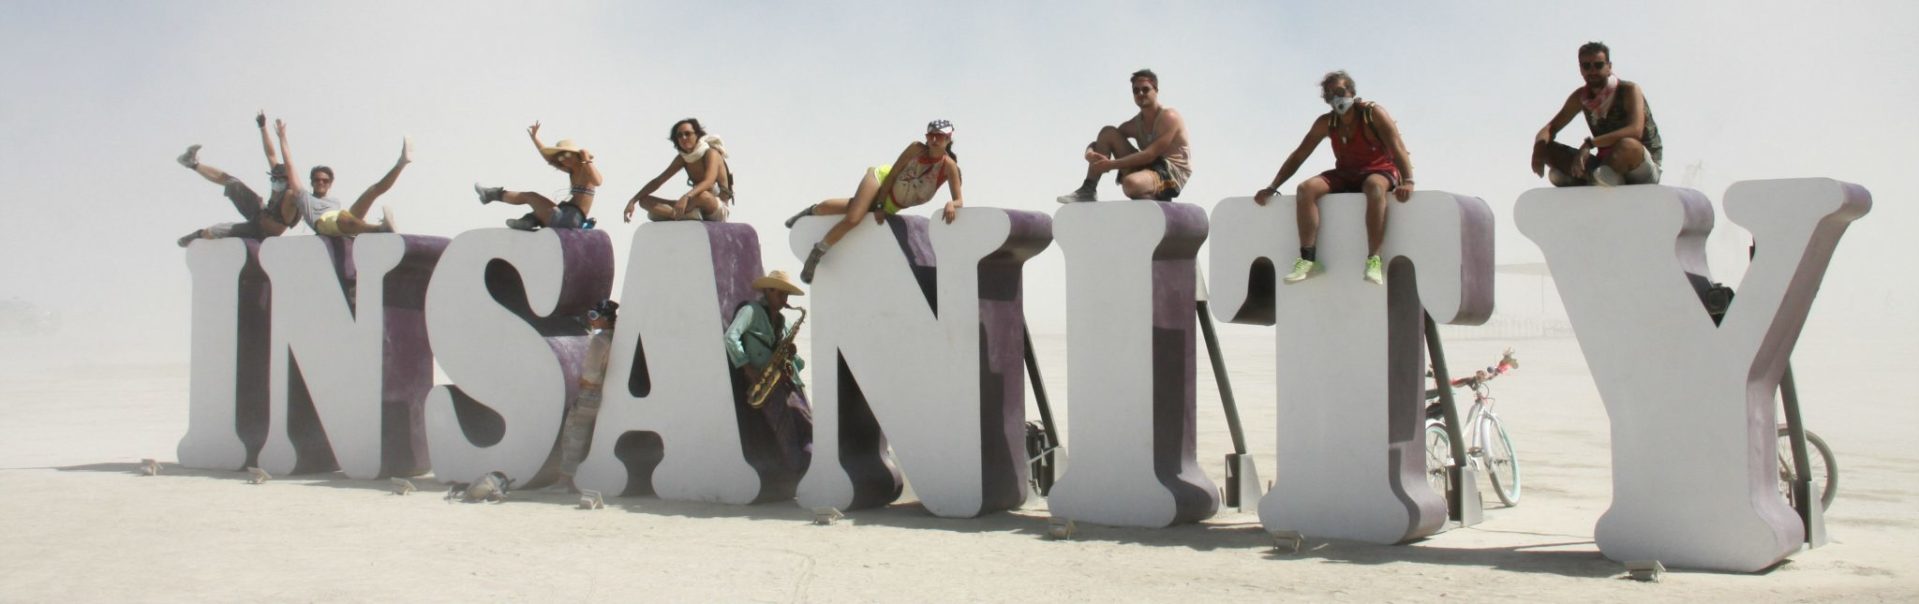 Bezoek het Burning Man Festival in de Blackrock Desert